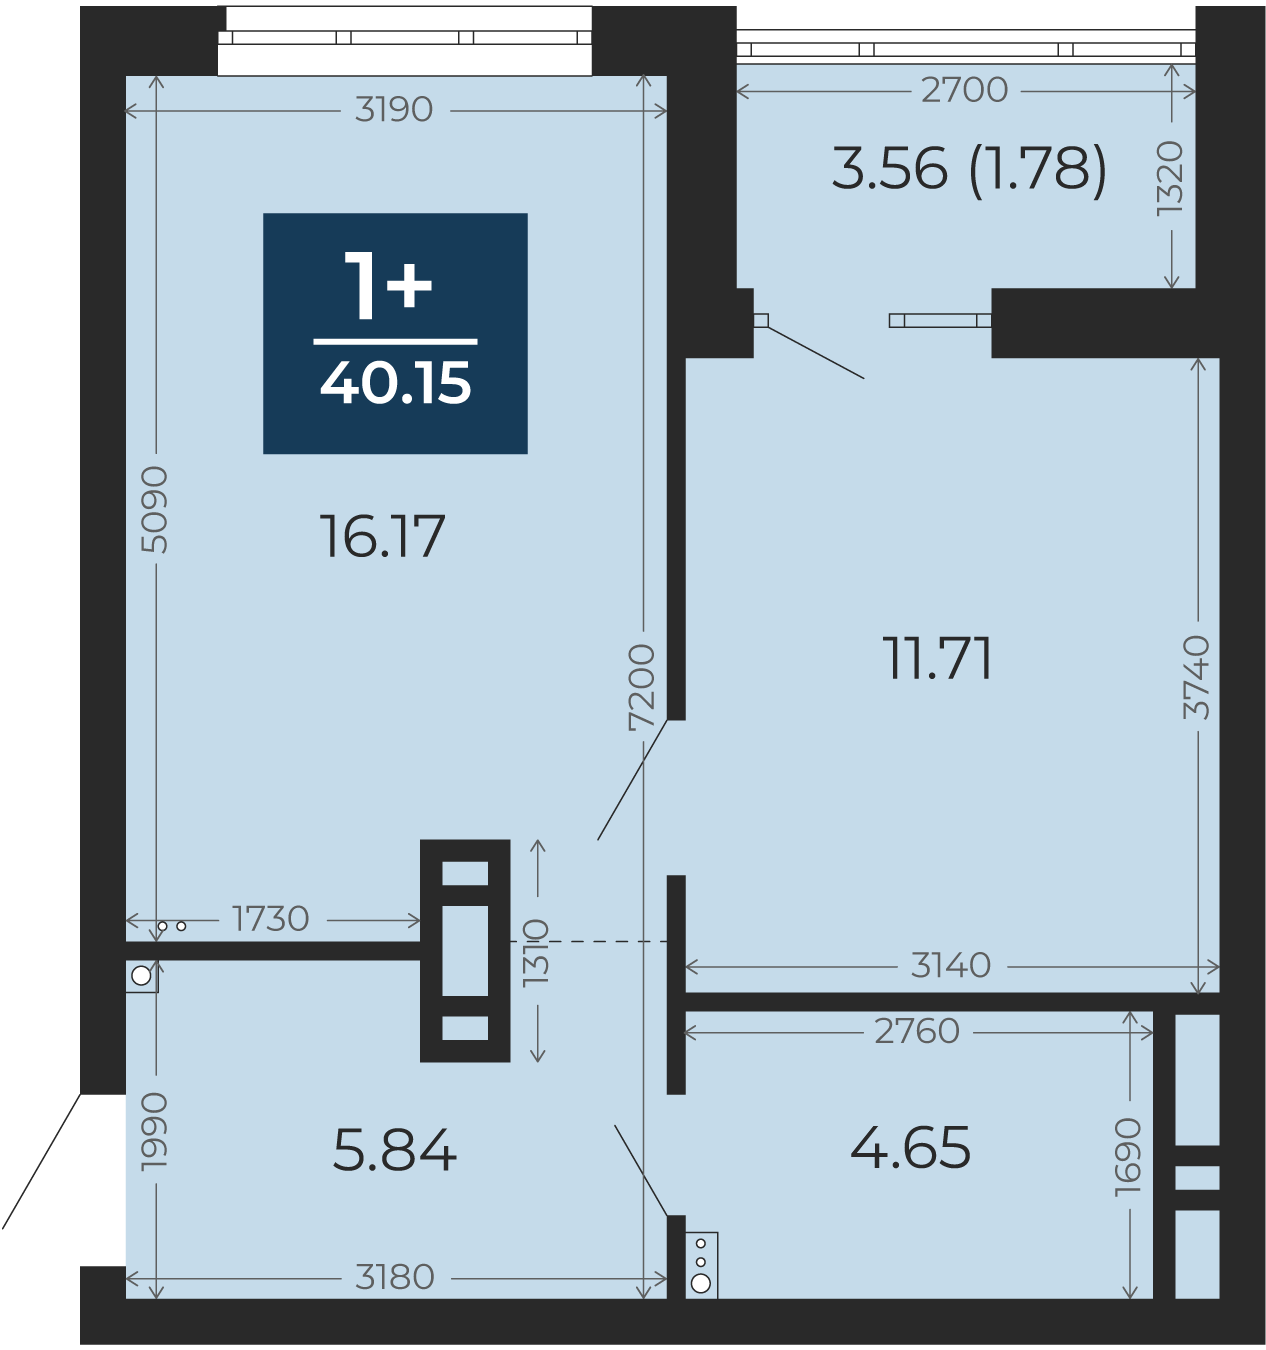 Квартира № 69, 1-комнатная, 40.15 кв. м, 10 этаж